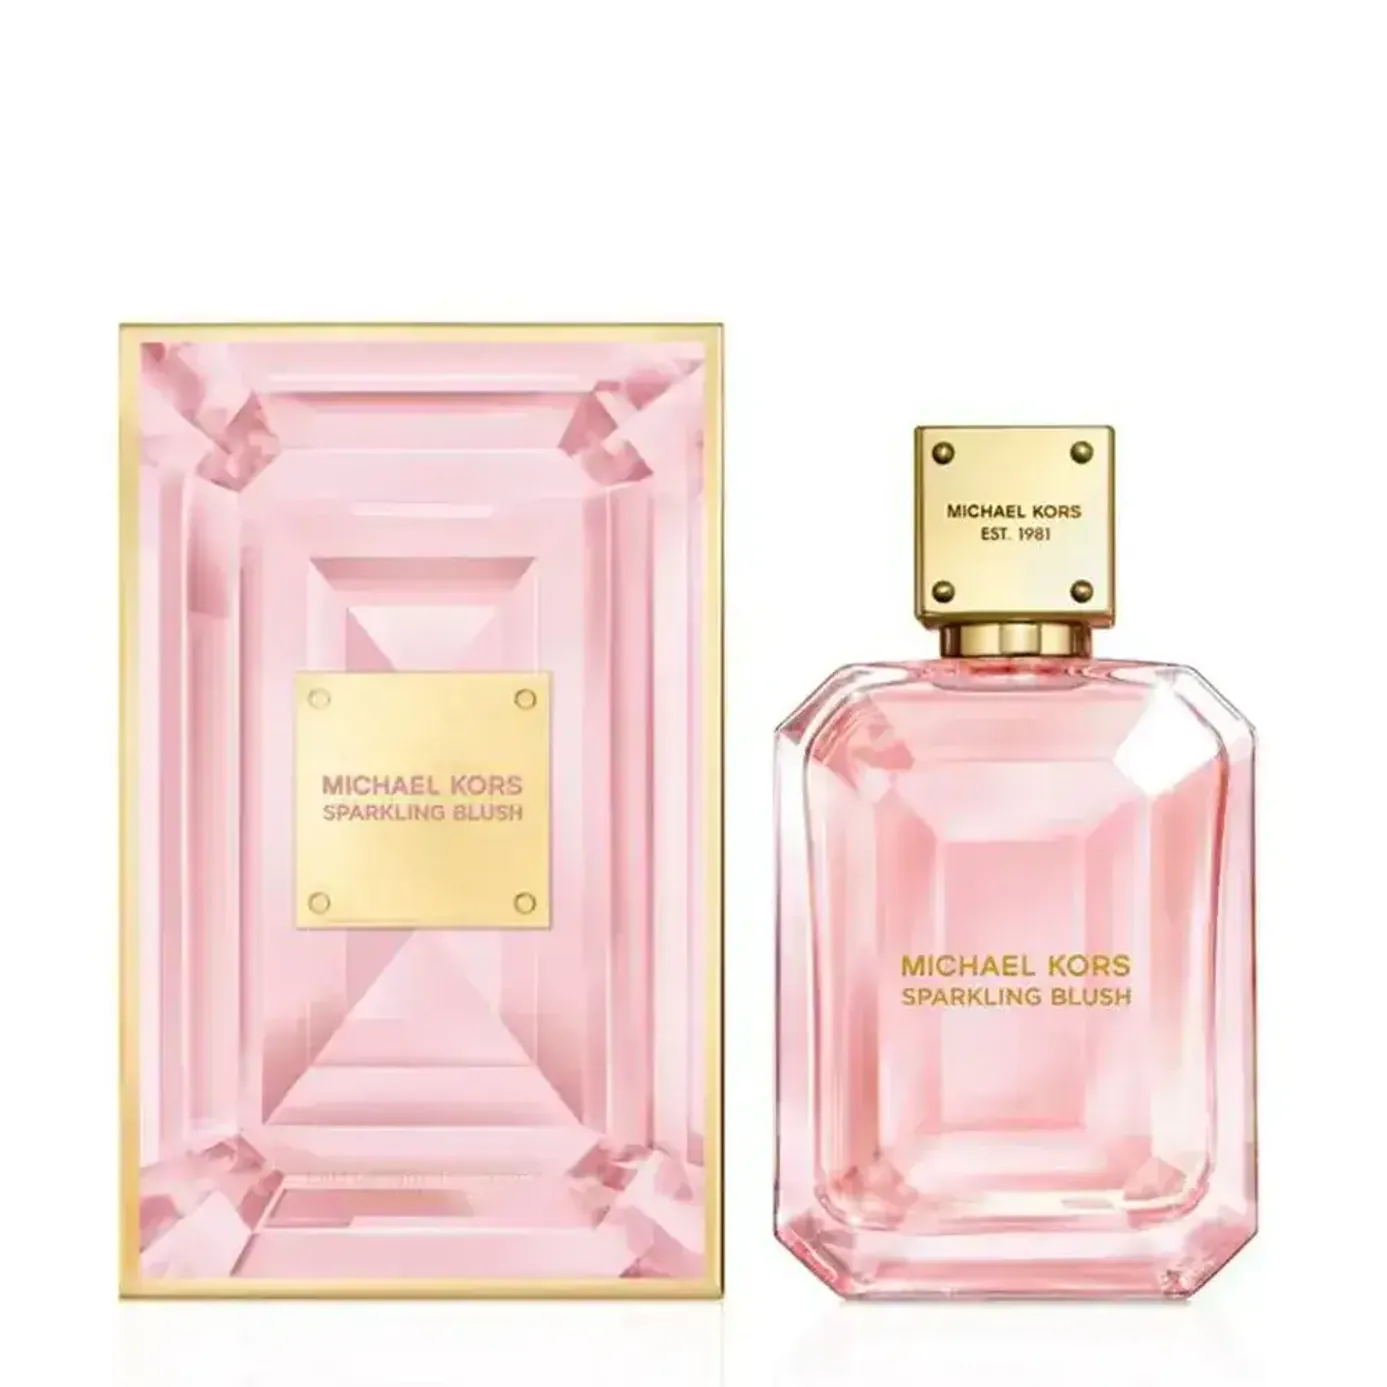 Nước hoa Michael Kors Sparkling Blush 50ml  Eau de Parfum chính hãng Michael  Kors cao cấp dành c  FIT  Đặc quyền ưu đãi